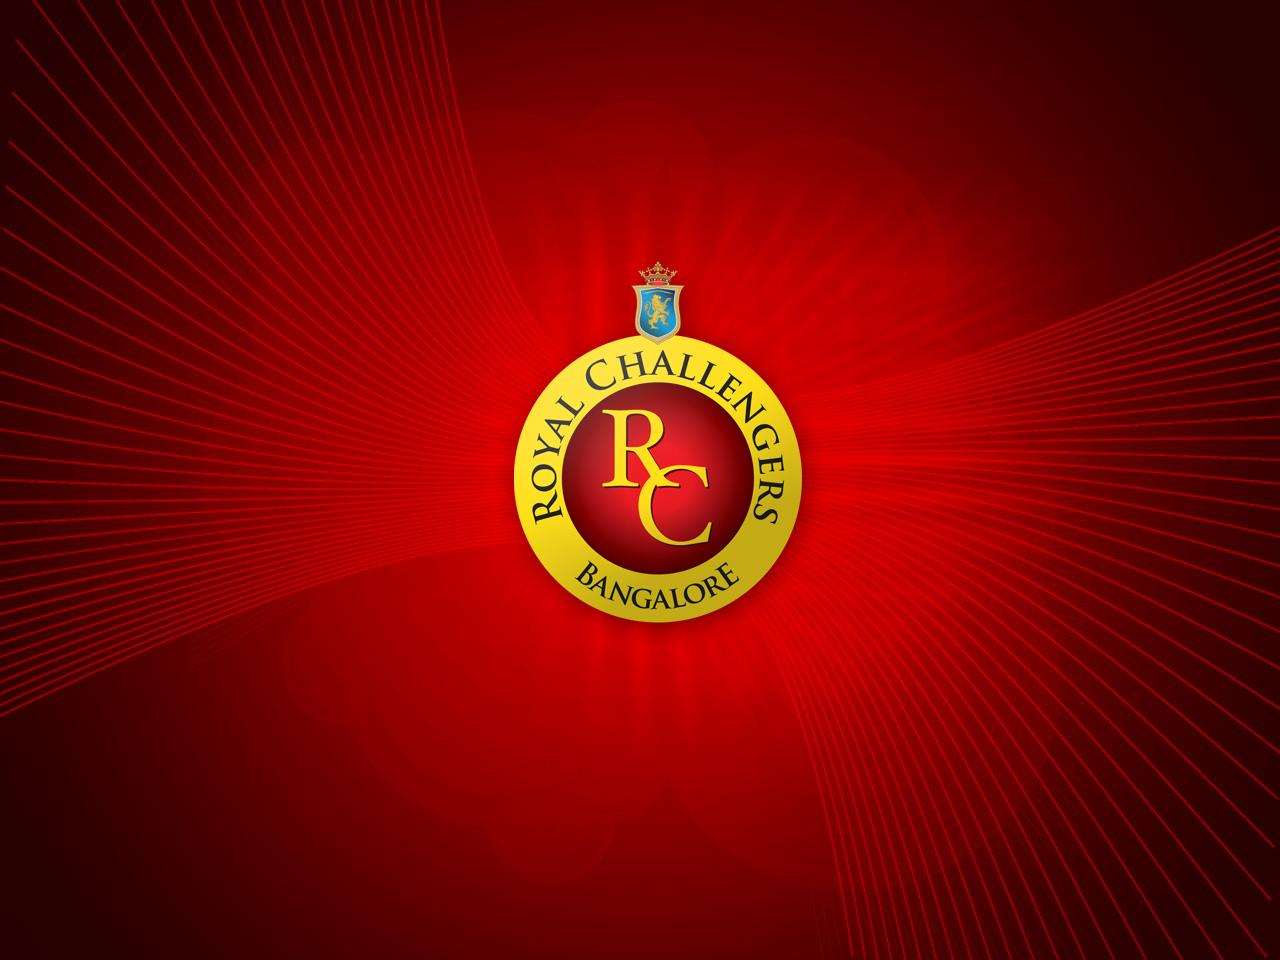 RCB logo animation - YouTube